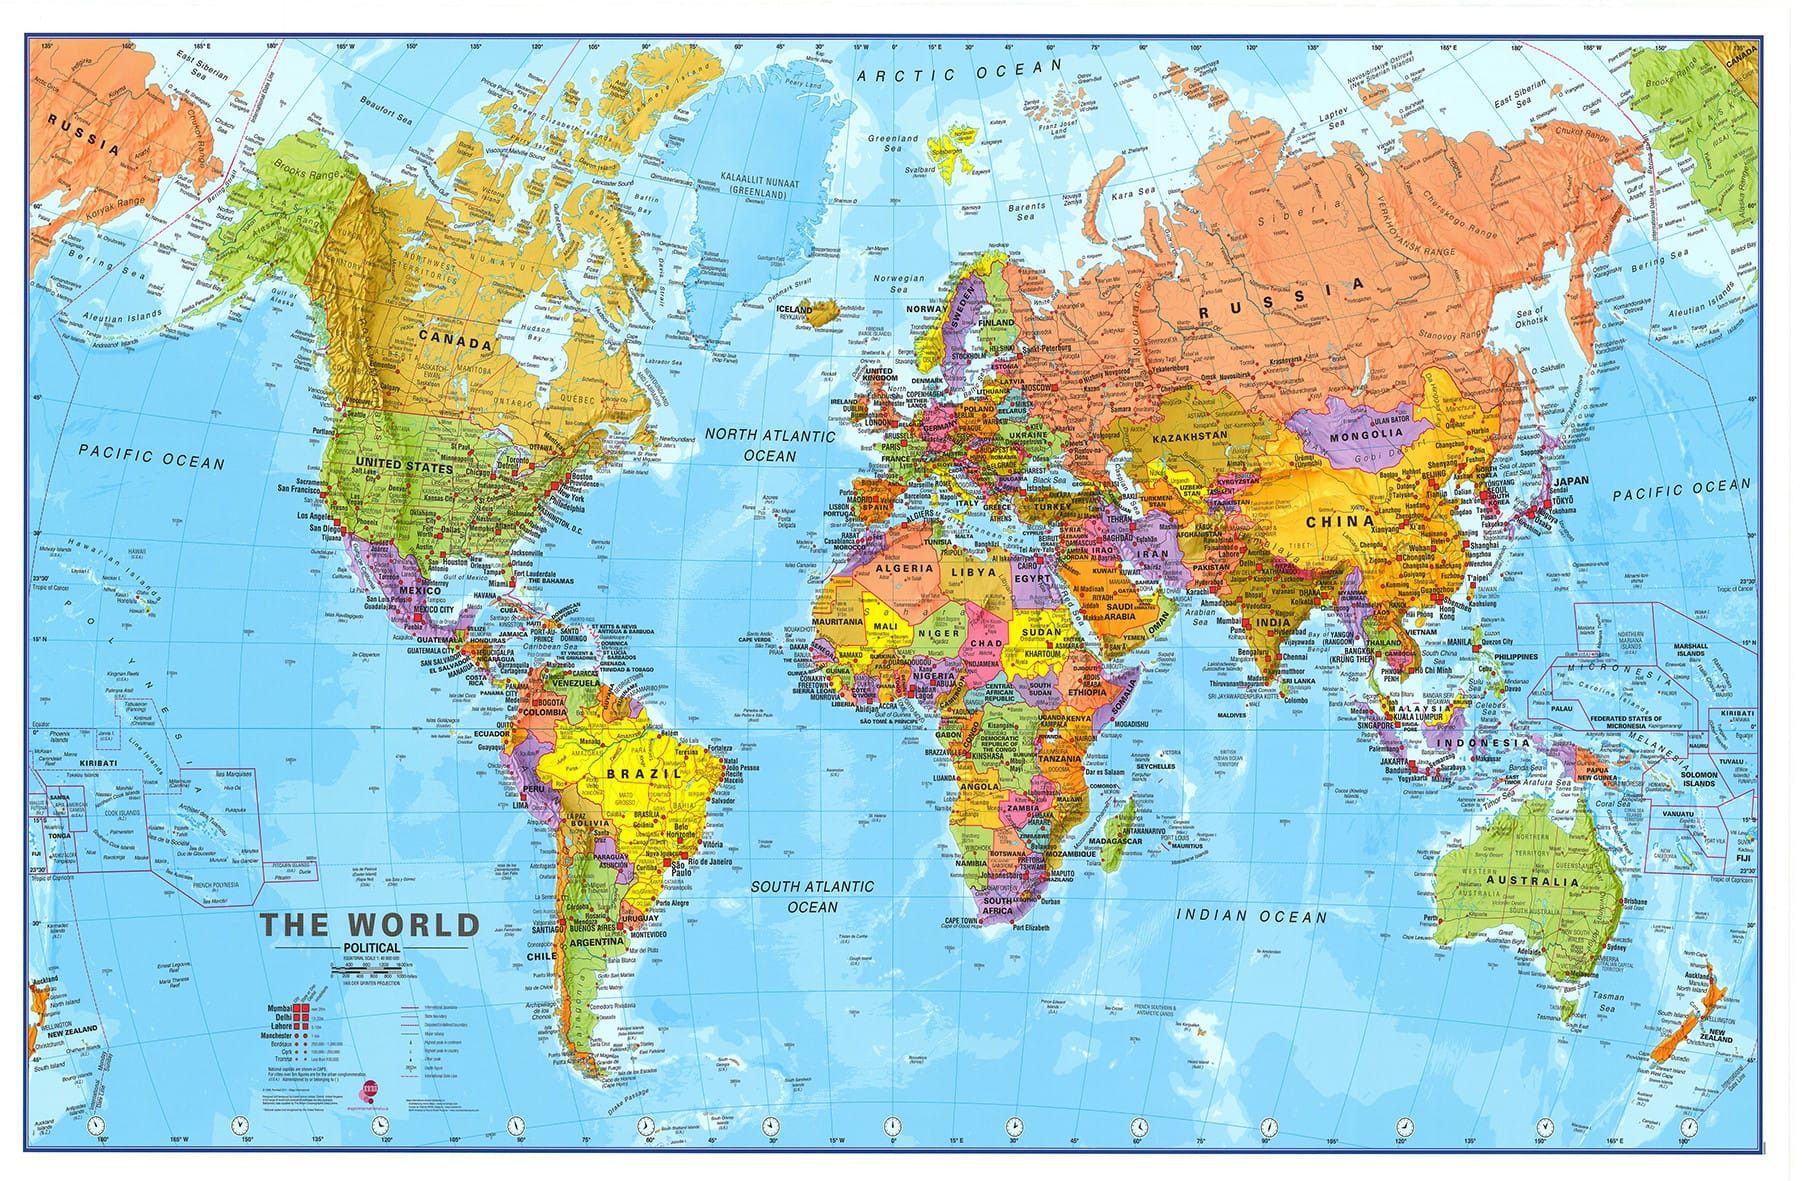 erven zonnebloem Agnes Gray De functie van kleur in kaarten | Maps Maps Maps